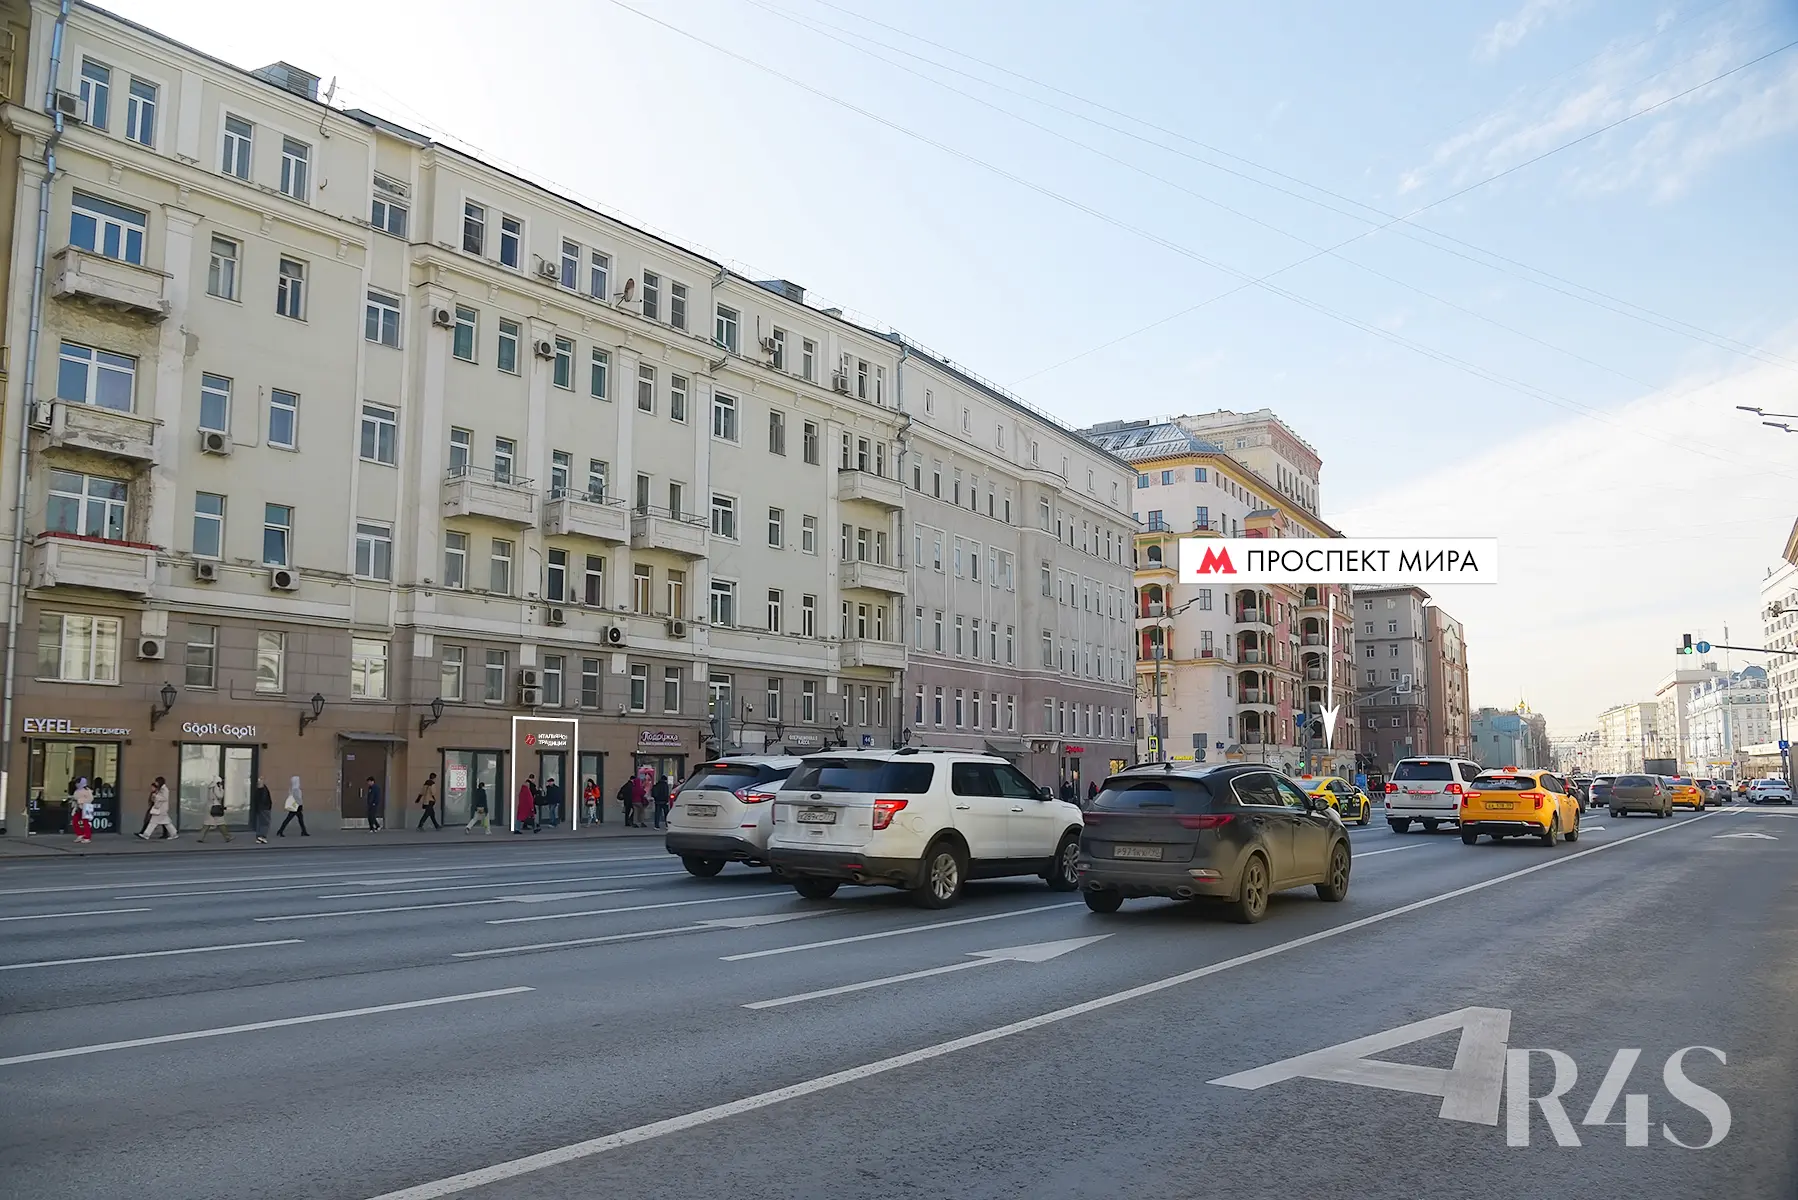 Продажа готового арендного бизнеса площадью 14 м2 в Москве: проспект Мира, 44 R4S | Realty4Sale